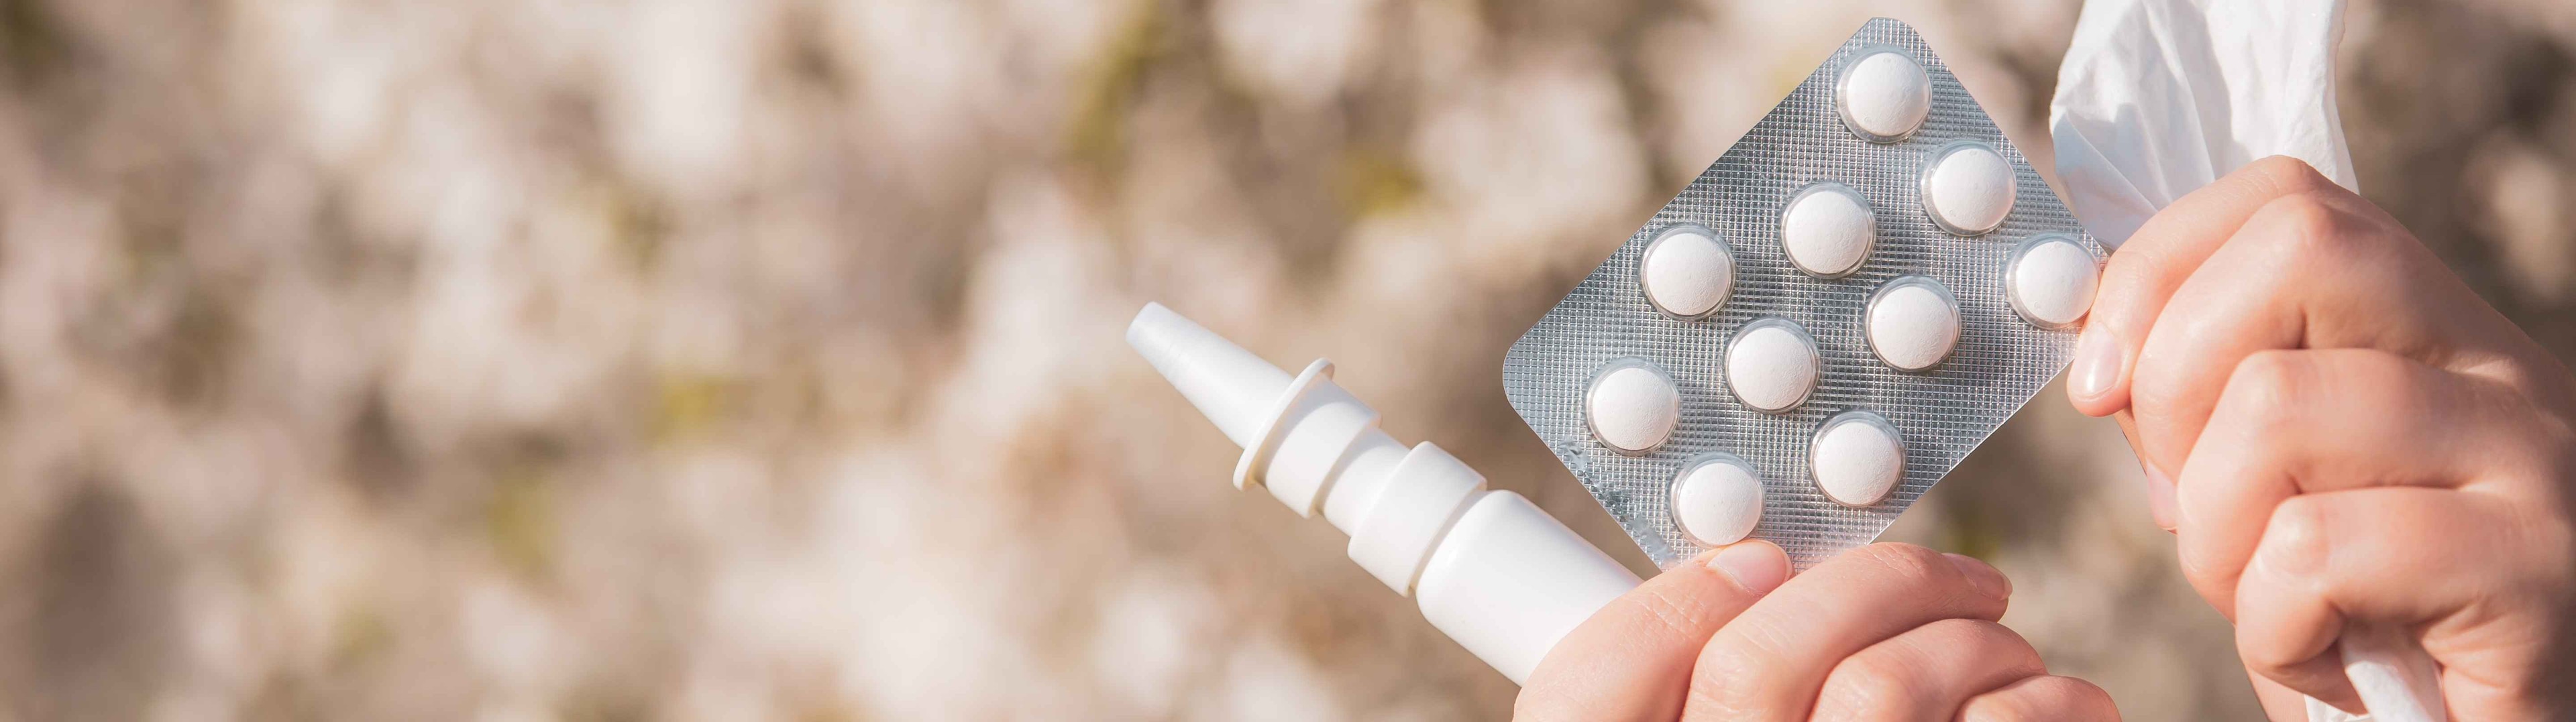 La venta de productos para la alergia en farmacias crece un 37% con respecto a 2021